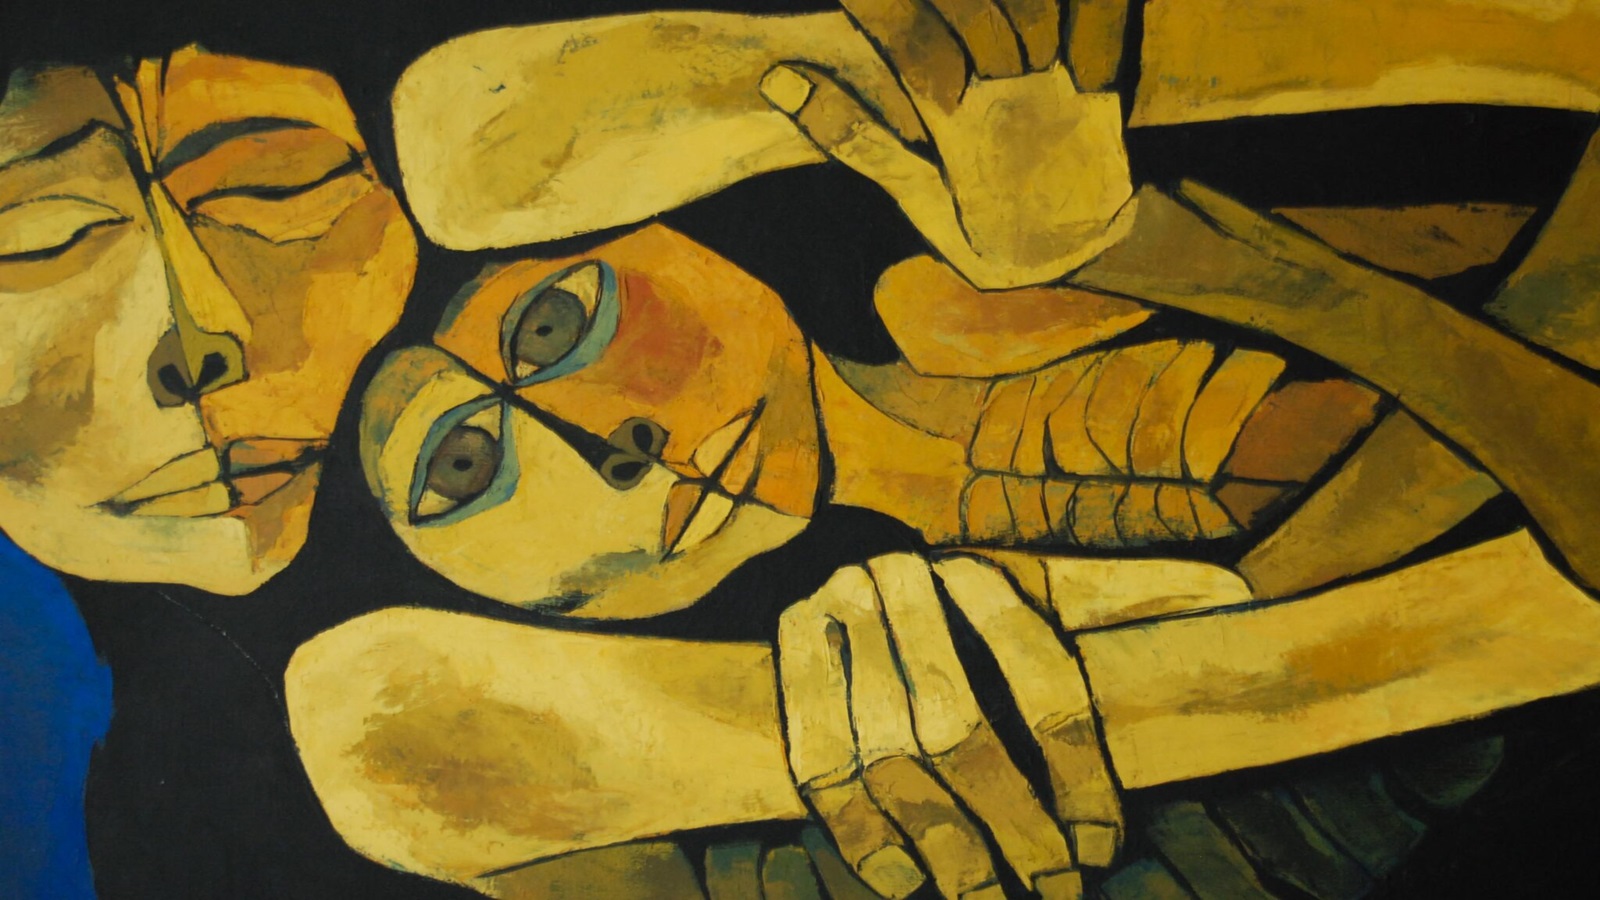 الإكوادوري أوسفالدو غواياسامين... رسام الأجساد المعذبة والأيقونات المسيحية